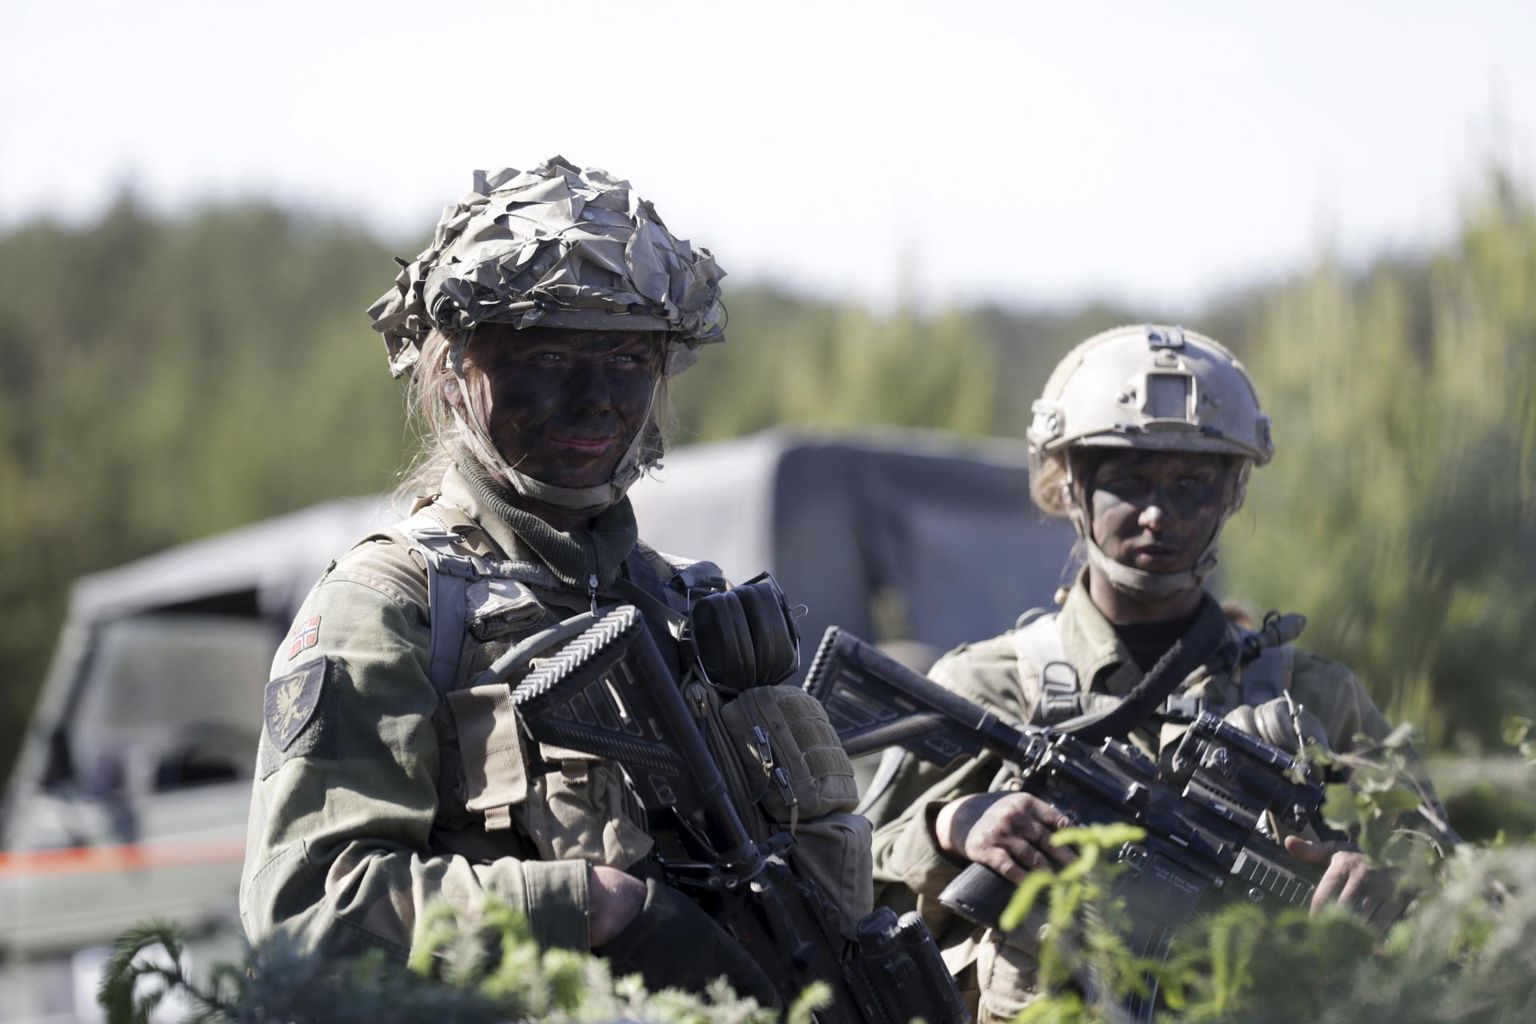 Norra sõdurid 2015. aastal õppusel Saber Strike. Norras kutsutakse alates 2016. aastast ajateenistusse nii mehi kui naisi; 2018. aastal moodustas naissoost ajateenijate osakaal 28,5 protsenti.